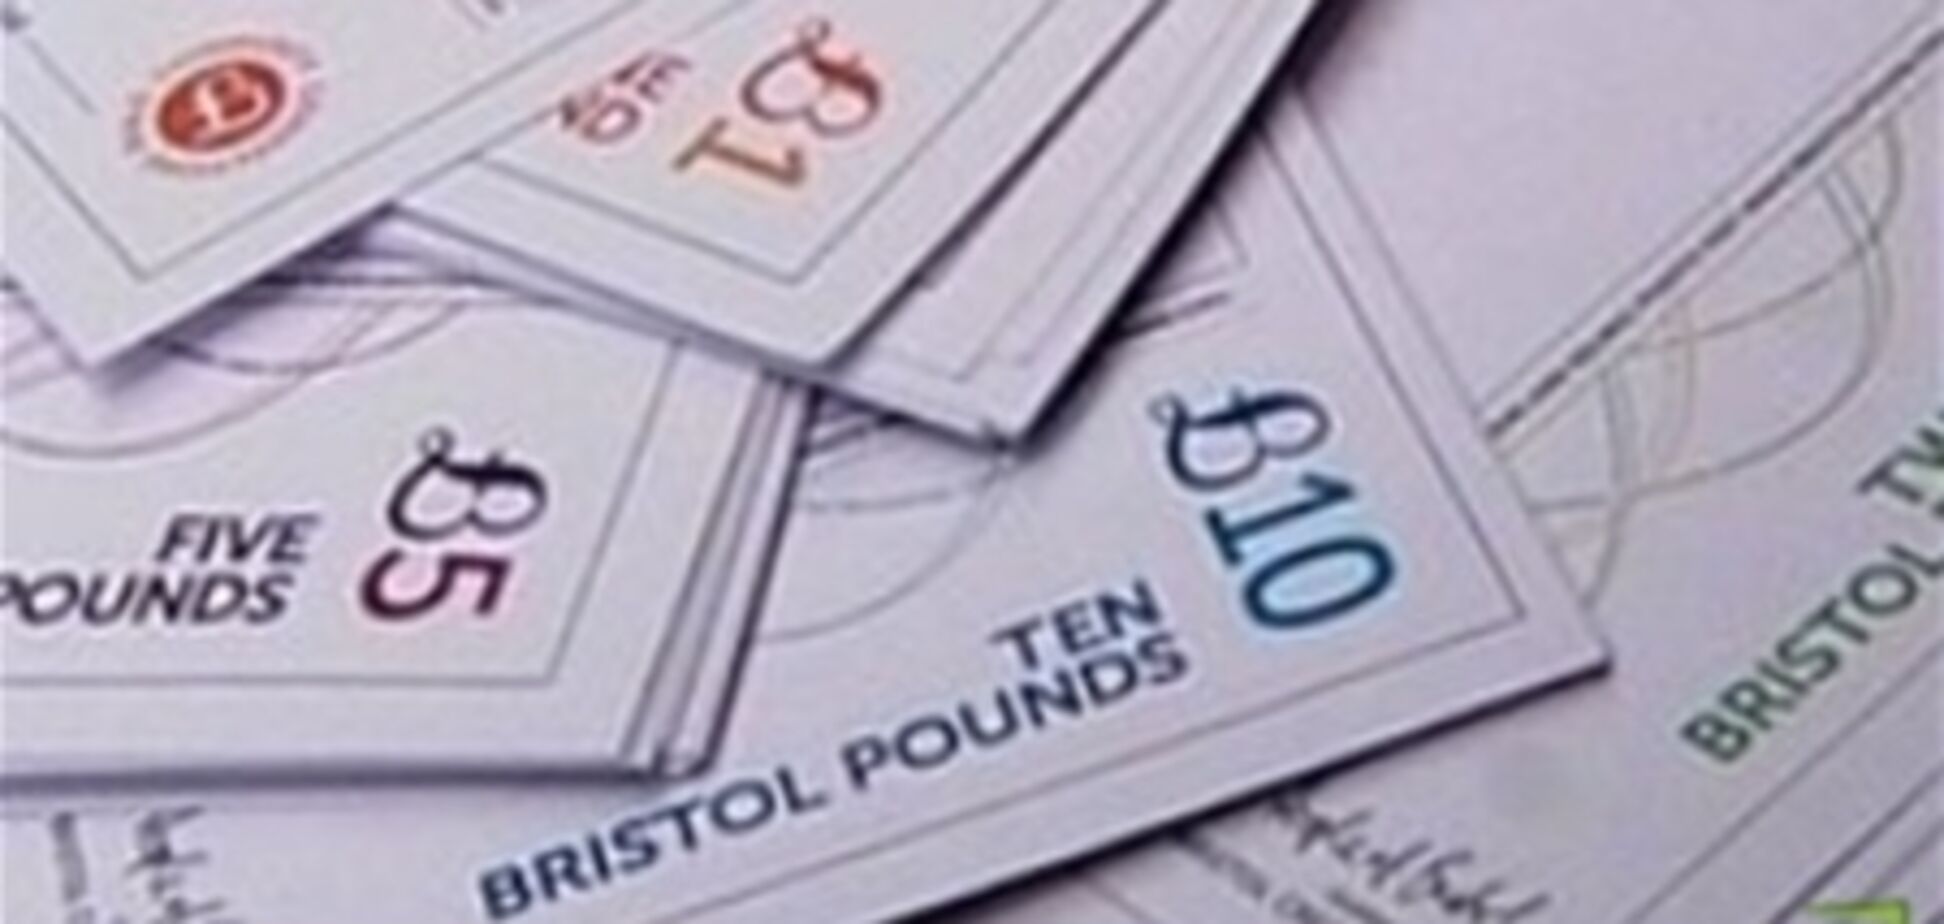 Британский город Бристоль вводит валюту для внутренних расчетов